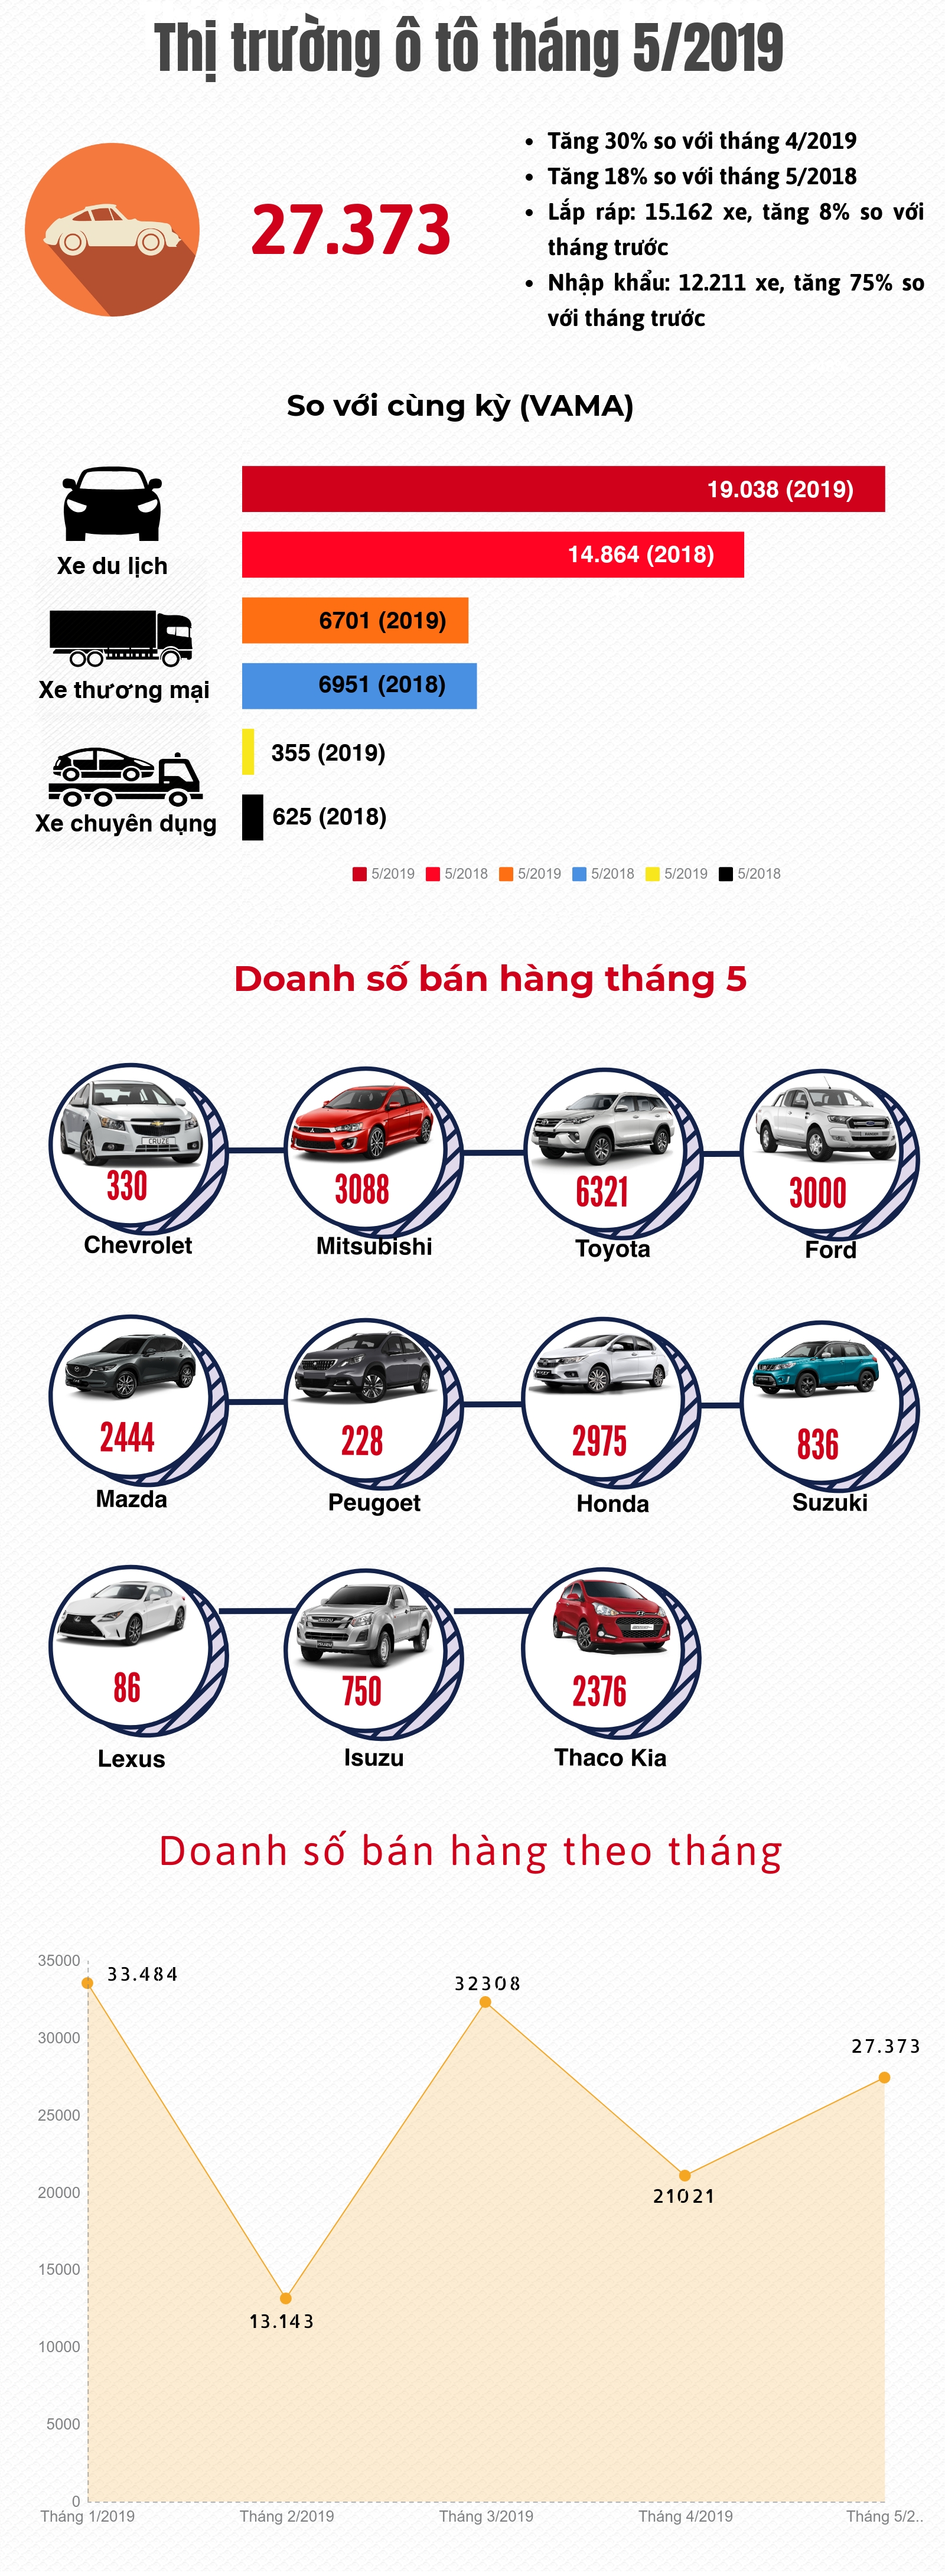 [Infographic] Thị trường ô tô tháng 5/2019: Lấy lại đà tăng